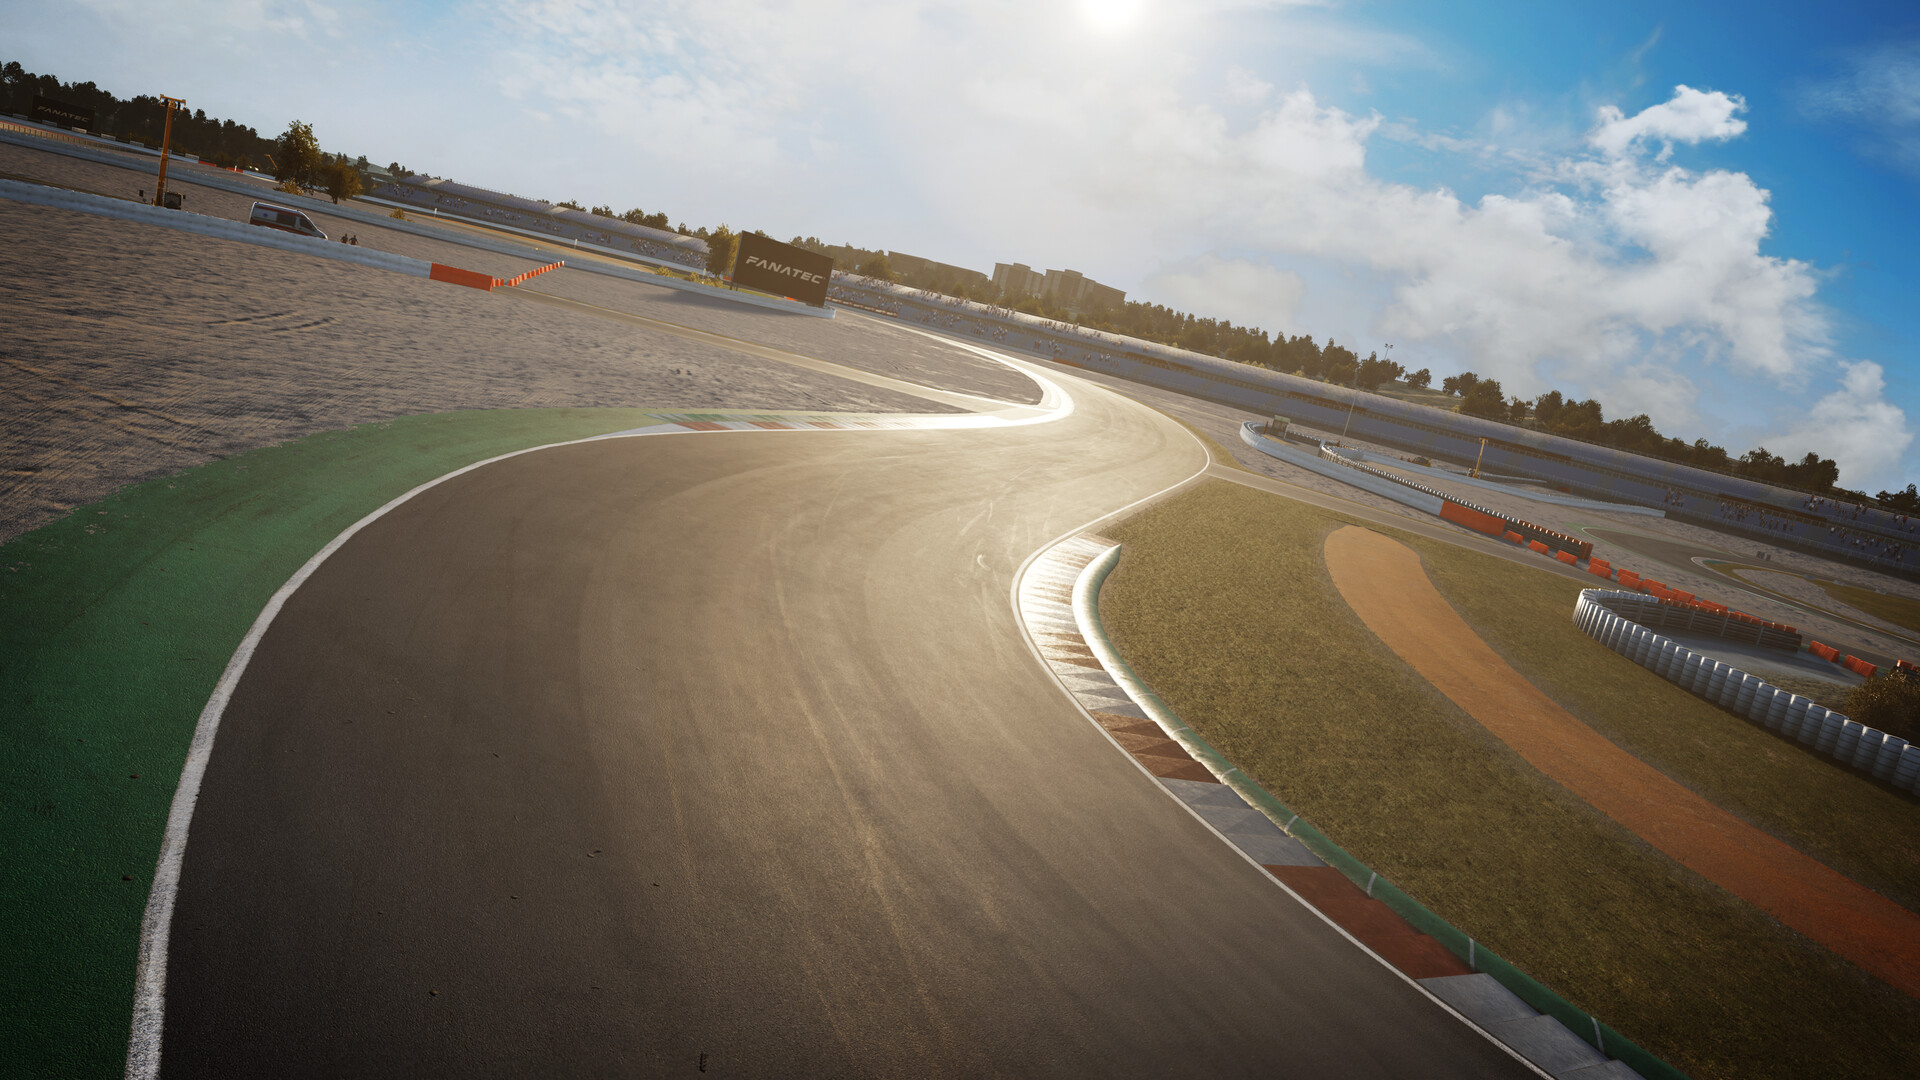 Assetto Corsa Competizione - 2023 GT World Challenge Pack no Steam